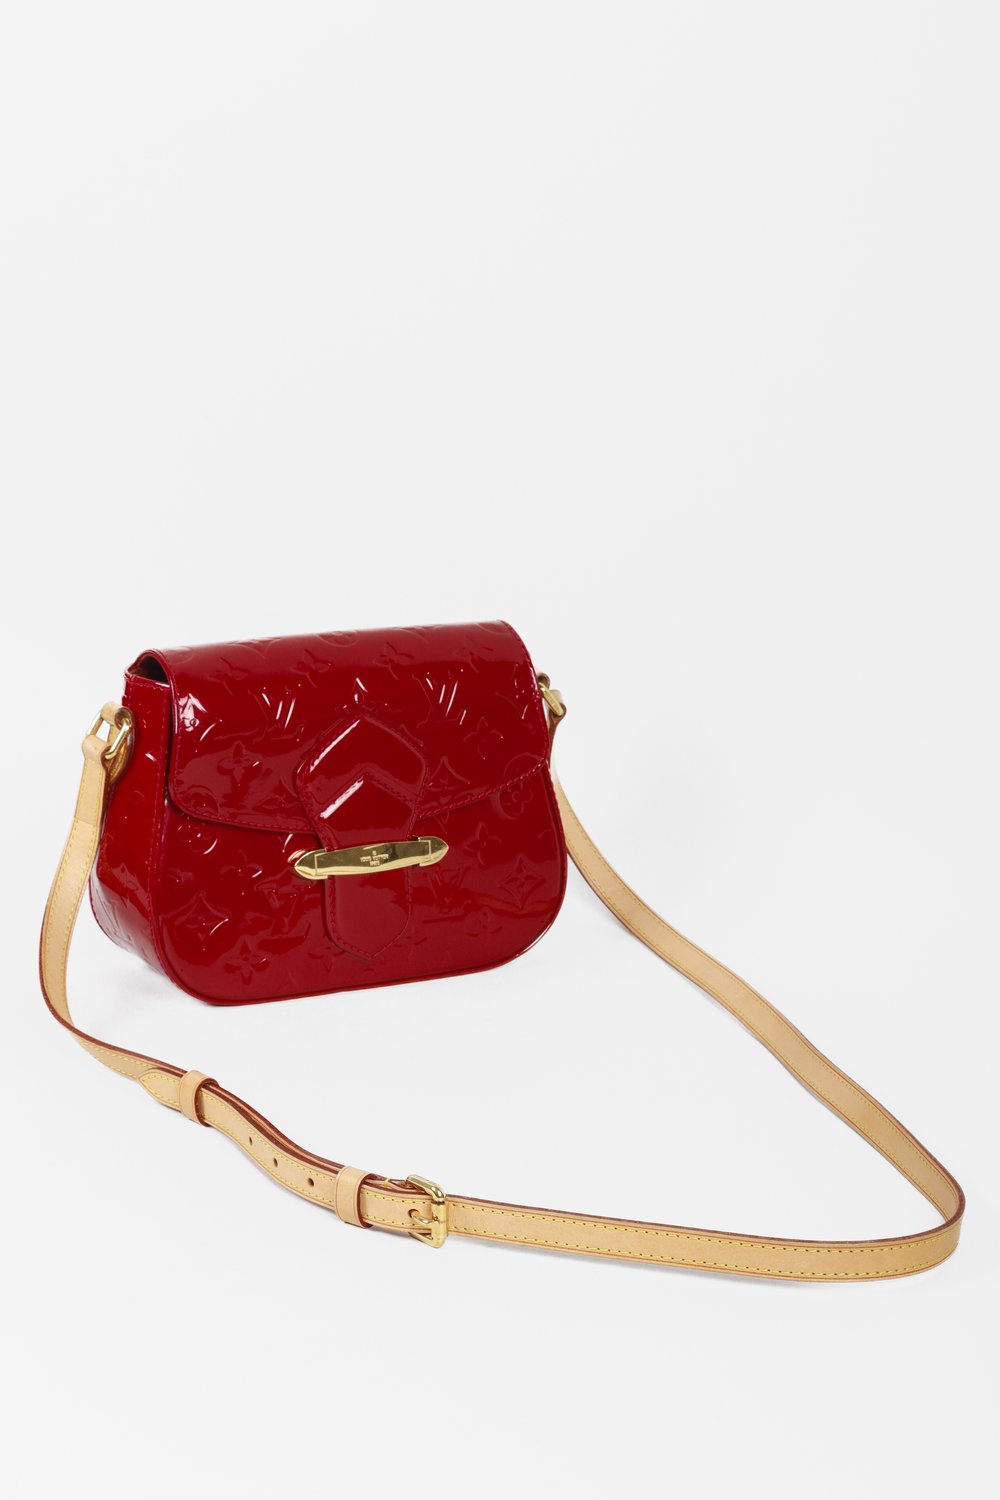 Louis Vuitton Vernis Bell Flower Gm Crossbody Bag Flap Red